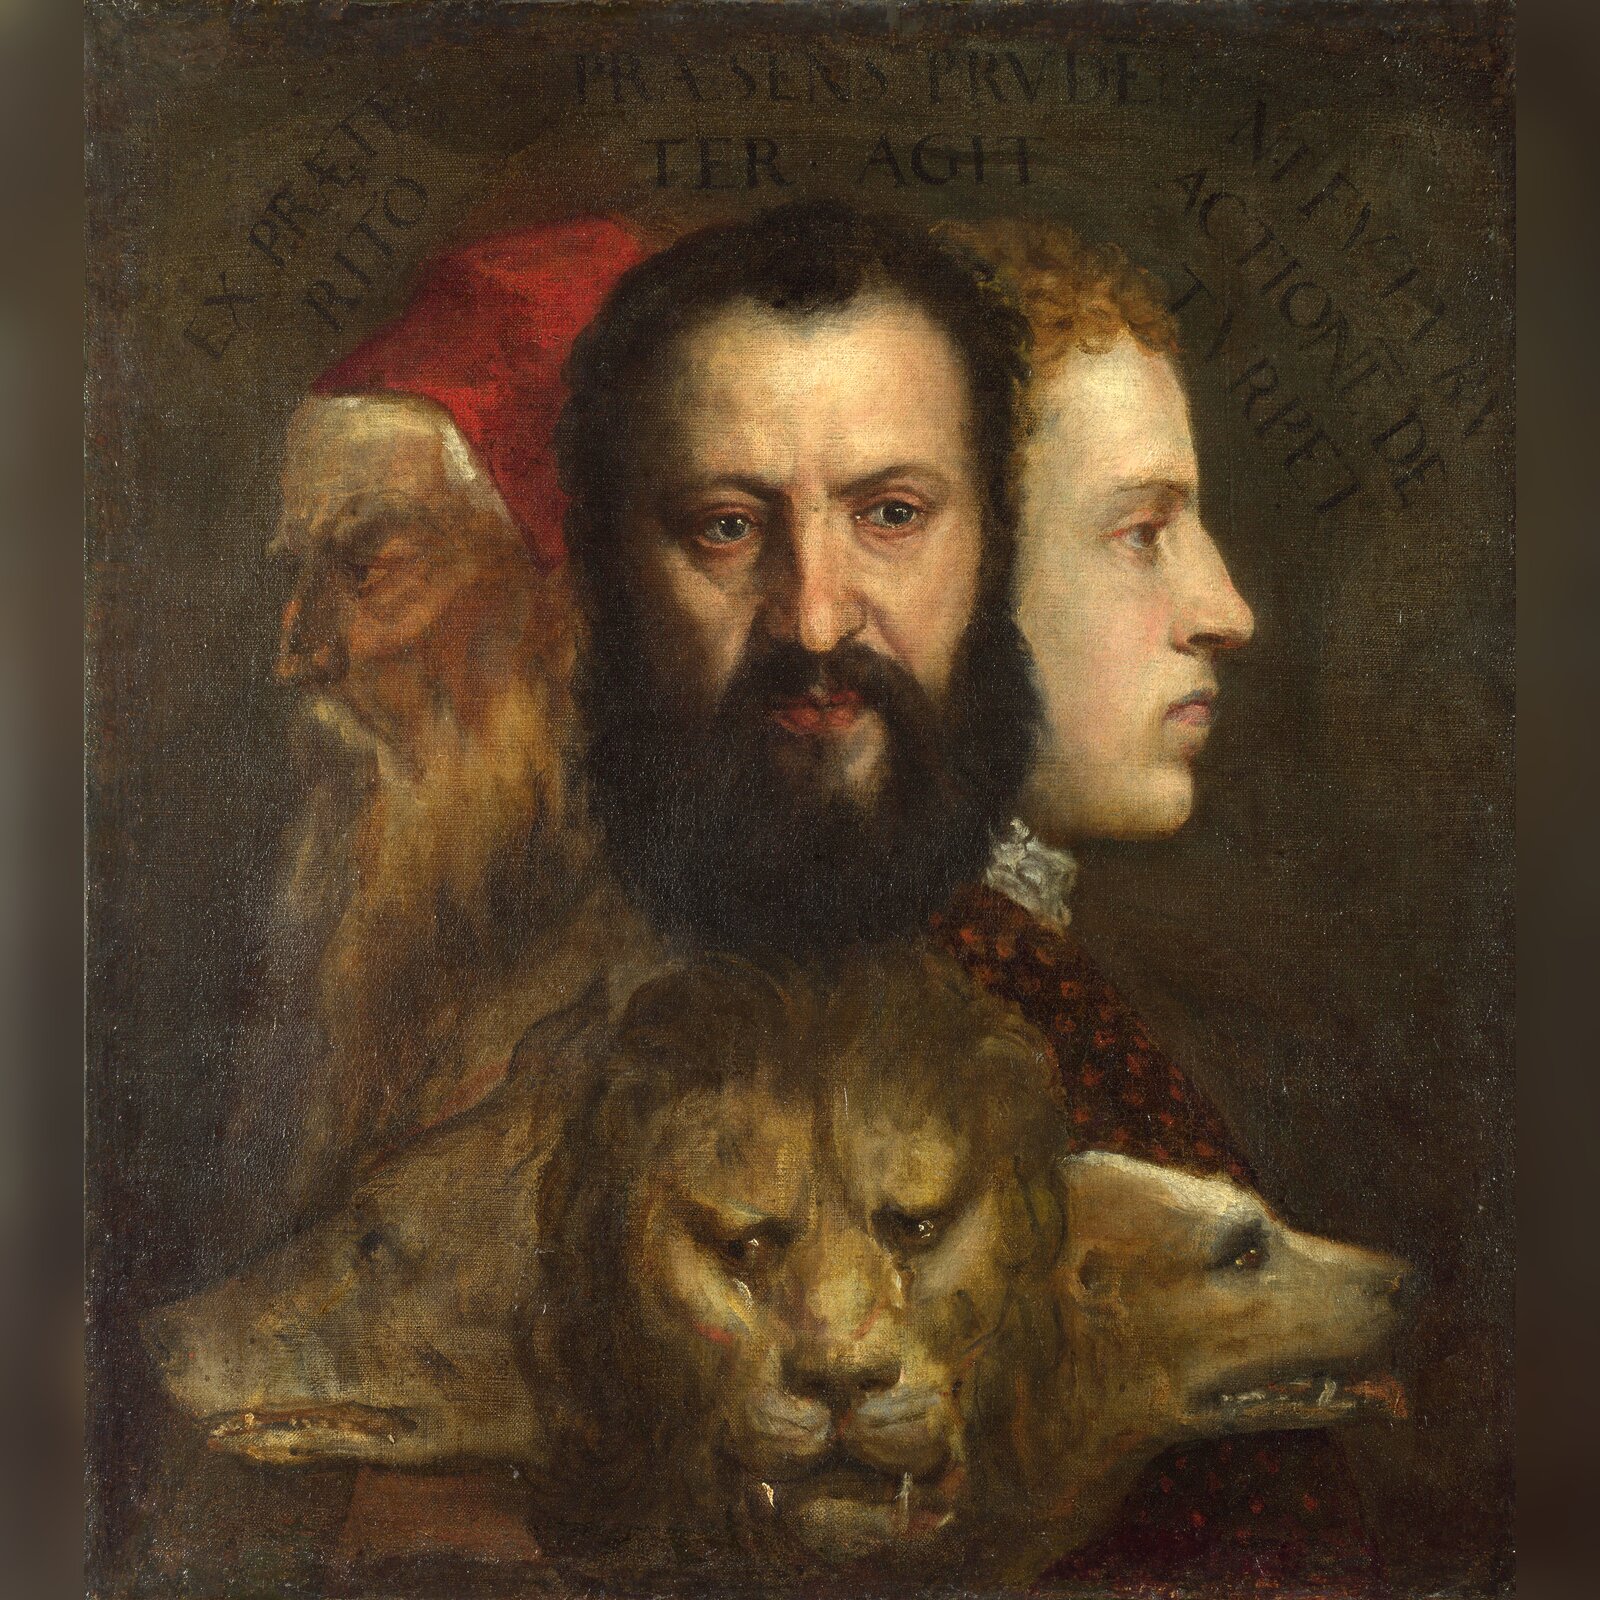 Obraz przedstawia twarze trzech mężczyzn. Po lewej stronie ukazany jest lewy profil brodatego starca w czepcu na głowie. Pod nim znajduje się łeb niedźwiedzia. Pośrodku ukazana jest twarz ciemnowłosego, dojrzałego, brodatego mężczyzny. Pod nią znajduje się głowa lwa. Po prawej stronie ukazany jest prawy profil młodego mężczyzny. Pod nim ukazana jest głowa wilka.